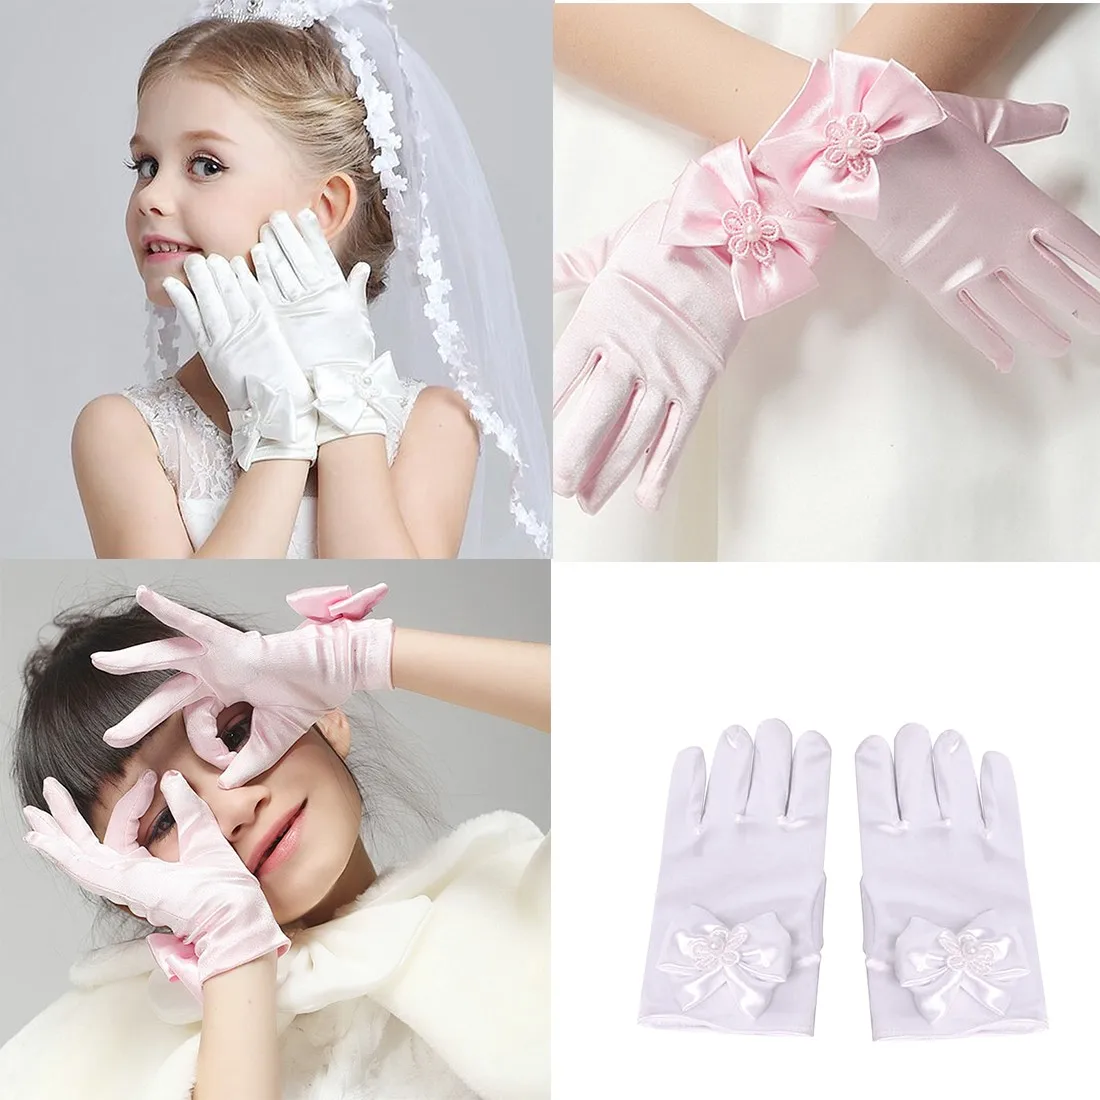 Очаровательные 1 пара милые вечерние перчатки с бантиком и цветами для девочек, варежки для церемонии, аксессуары для посещения церкви, детские перчатки